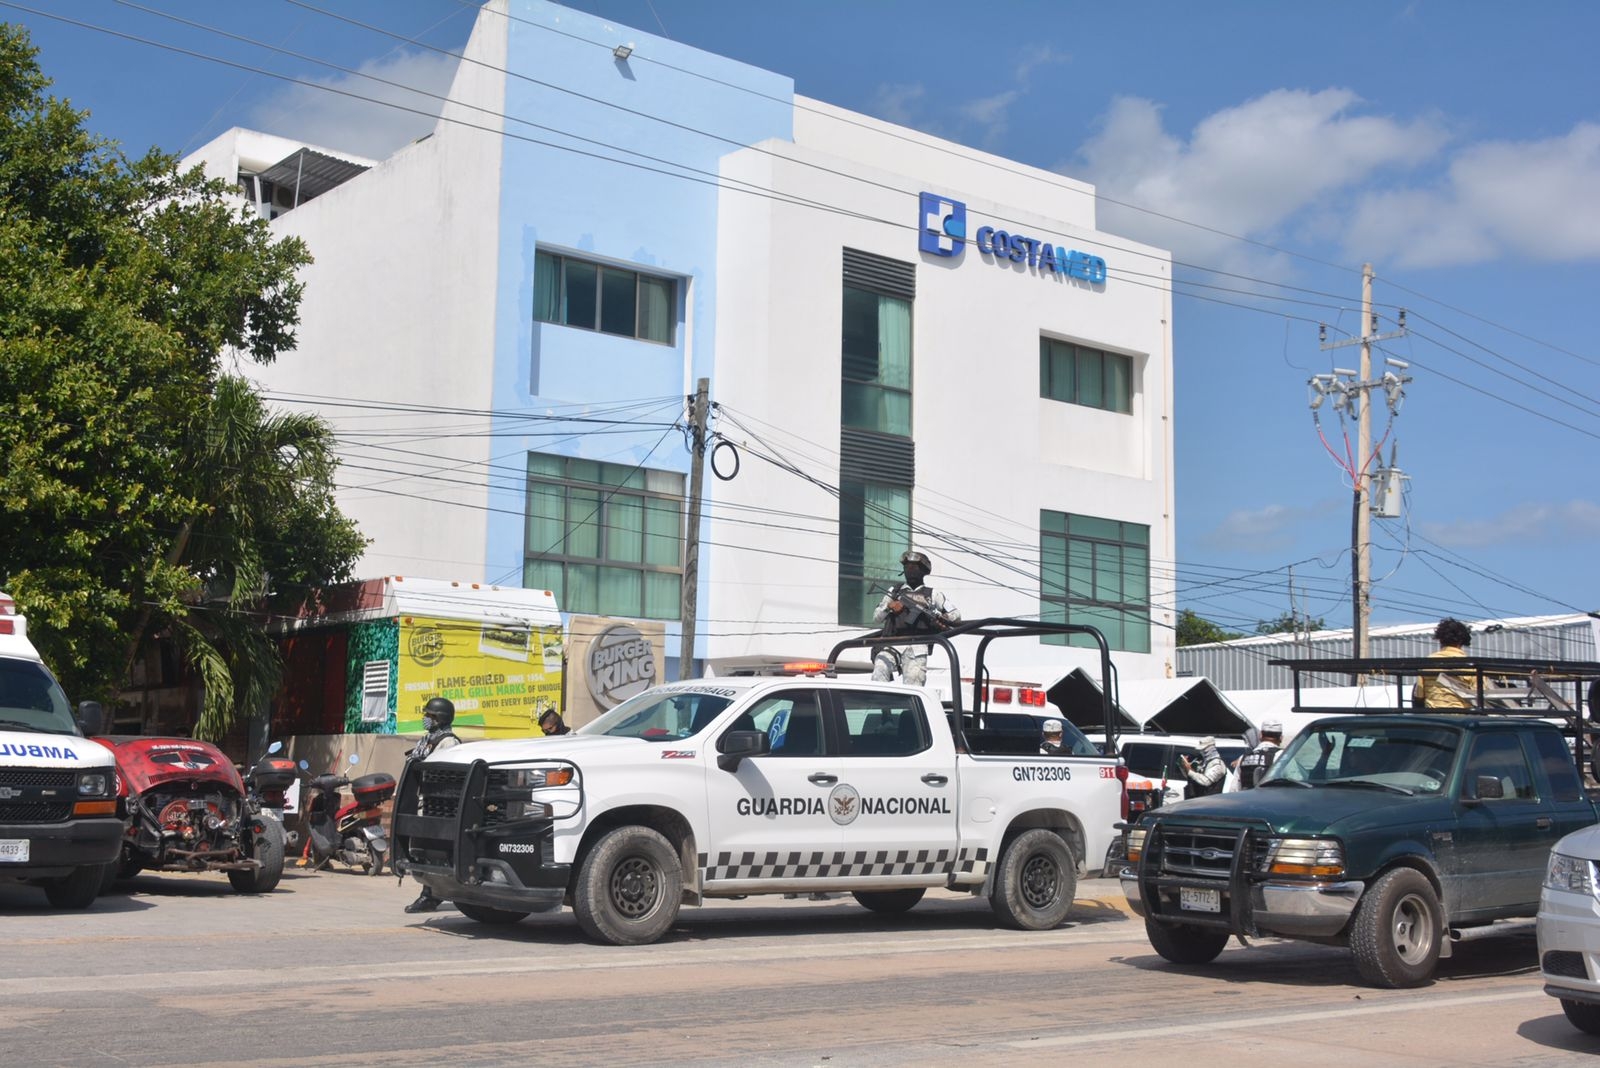 El hombre herido de bala terminó internado de urgencia en el Hospital Costamed de Tulum, donde permanece atendido debido a la herida de bala